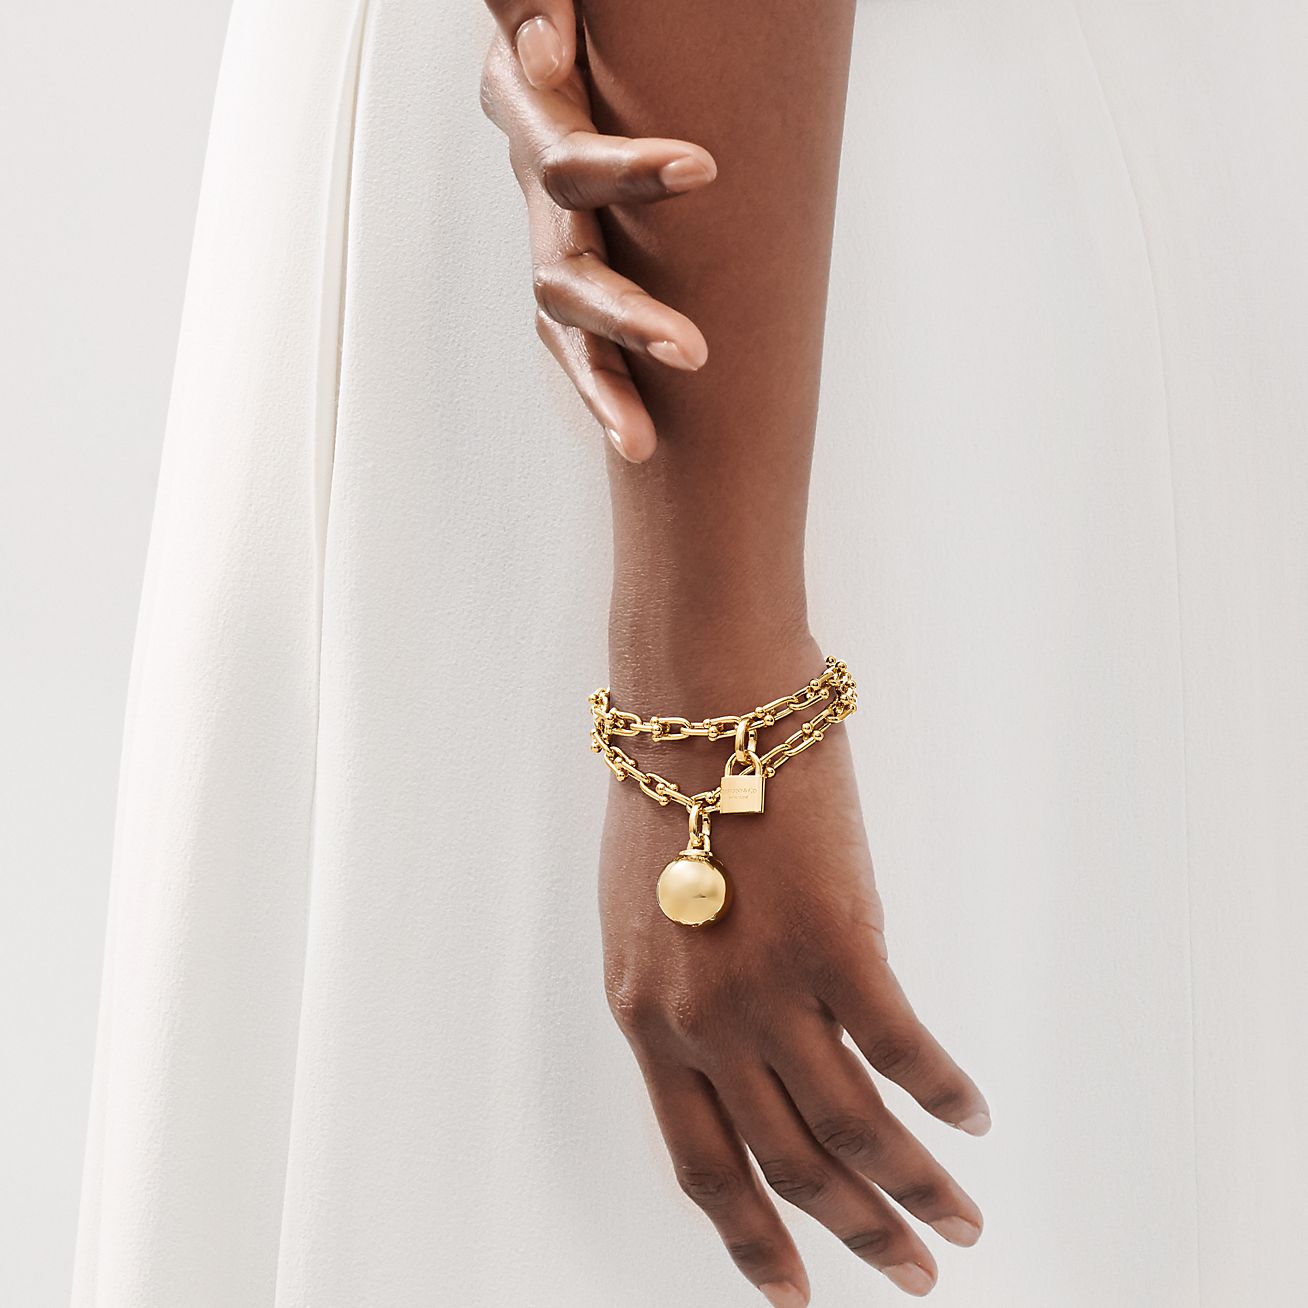 Tiffany HardWear wrap bracelet in 18k 